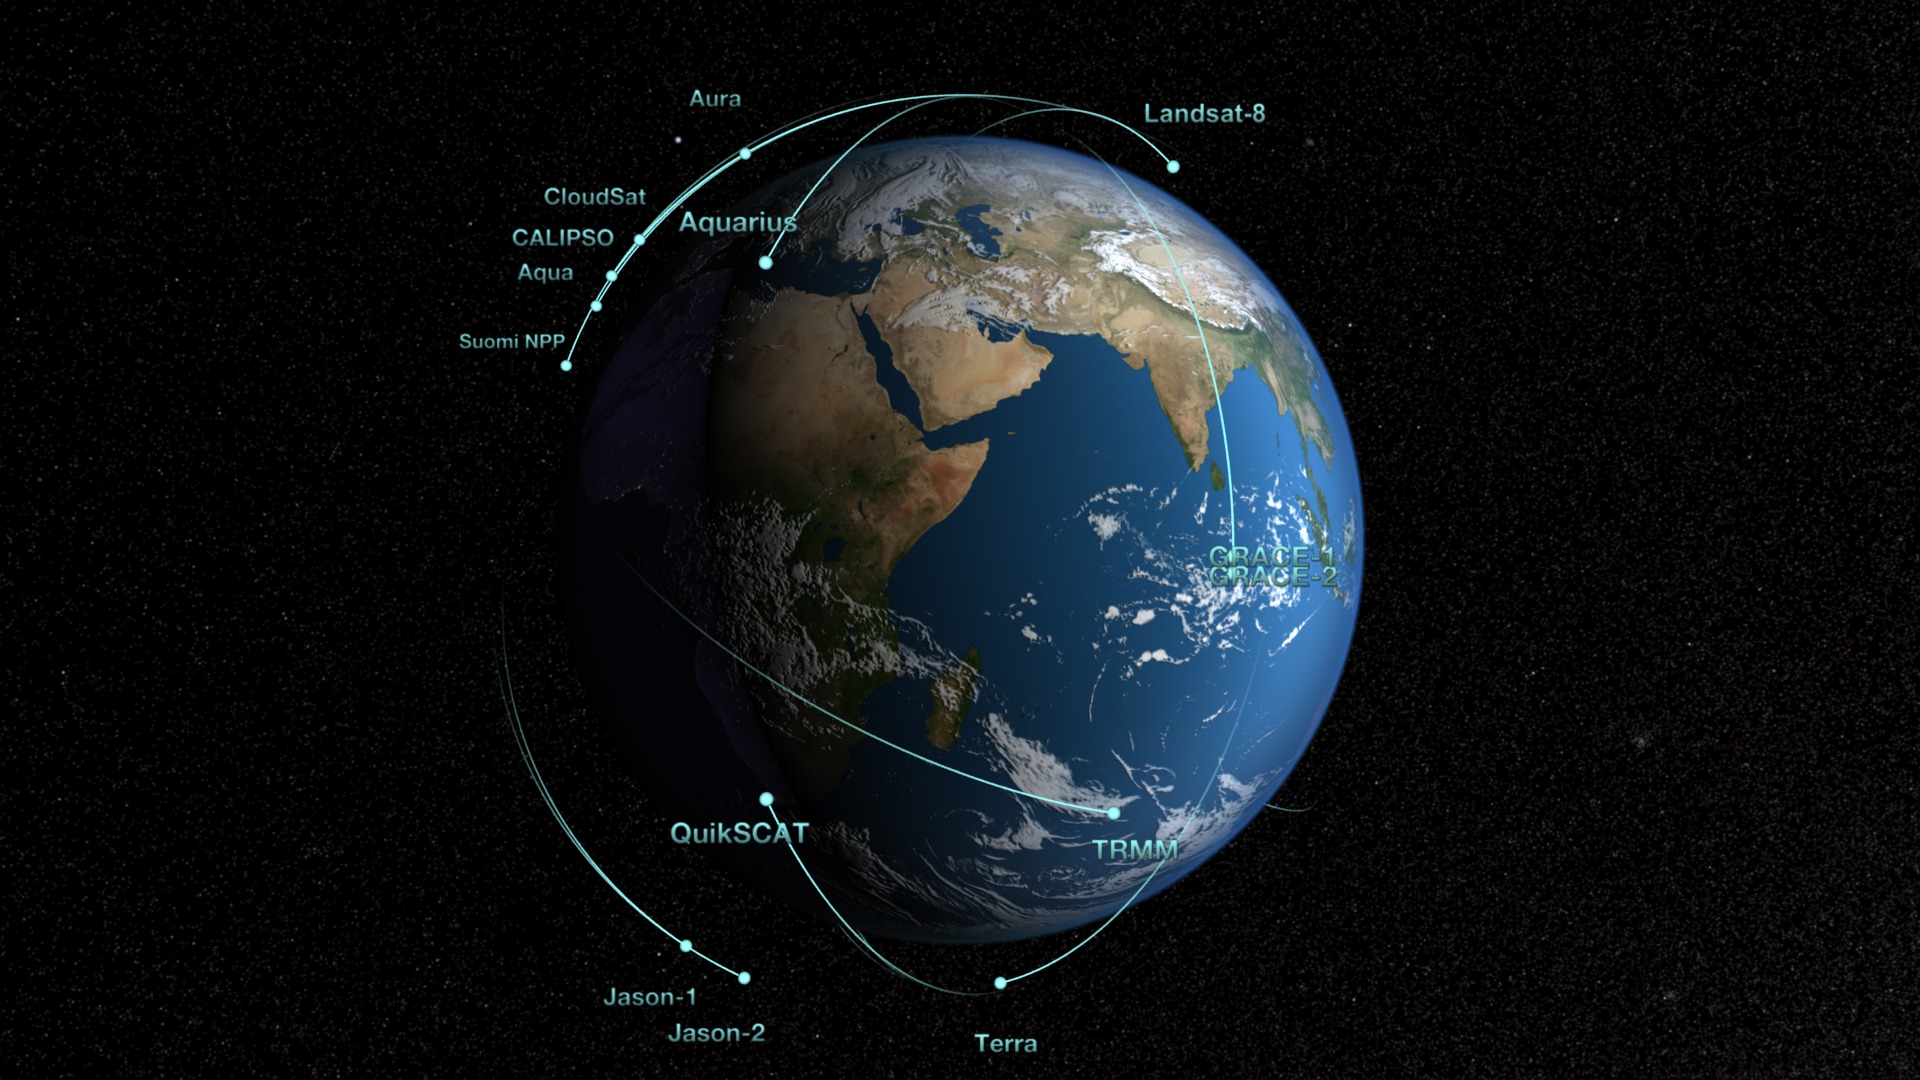 HD resolution version of NASA's Earth Observing Fleet (including Landsat 8)